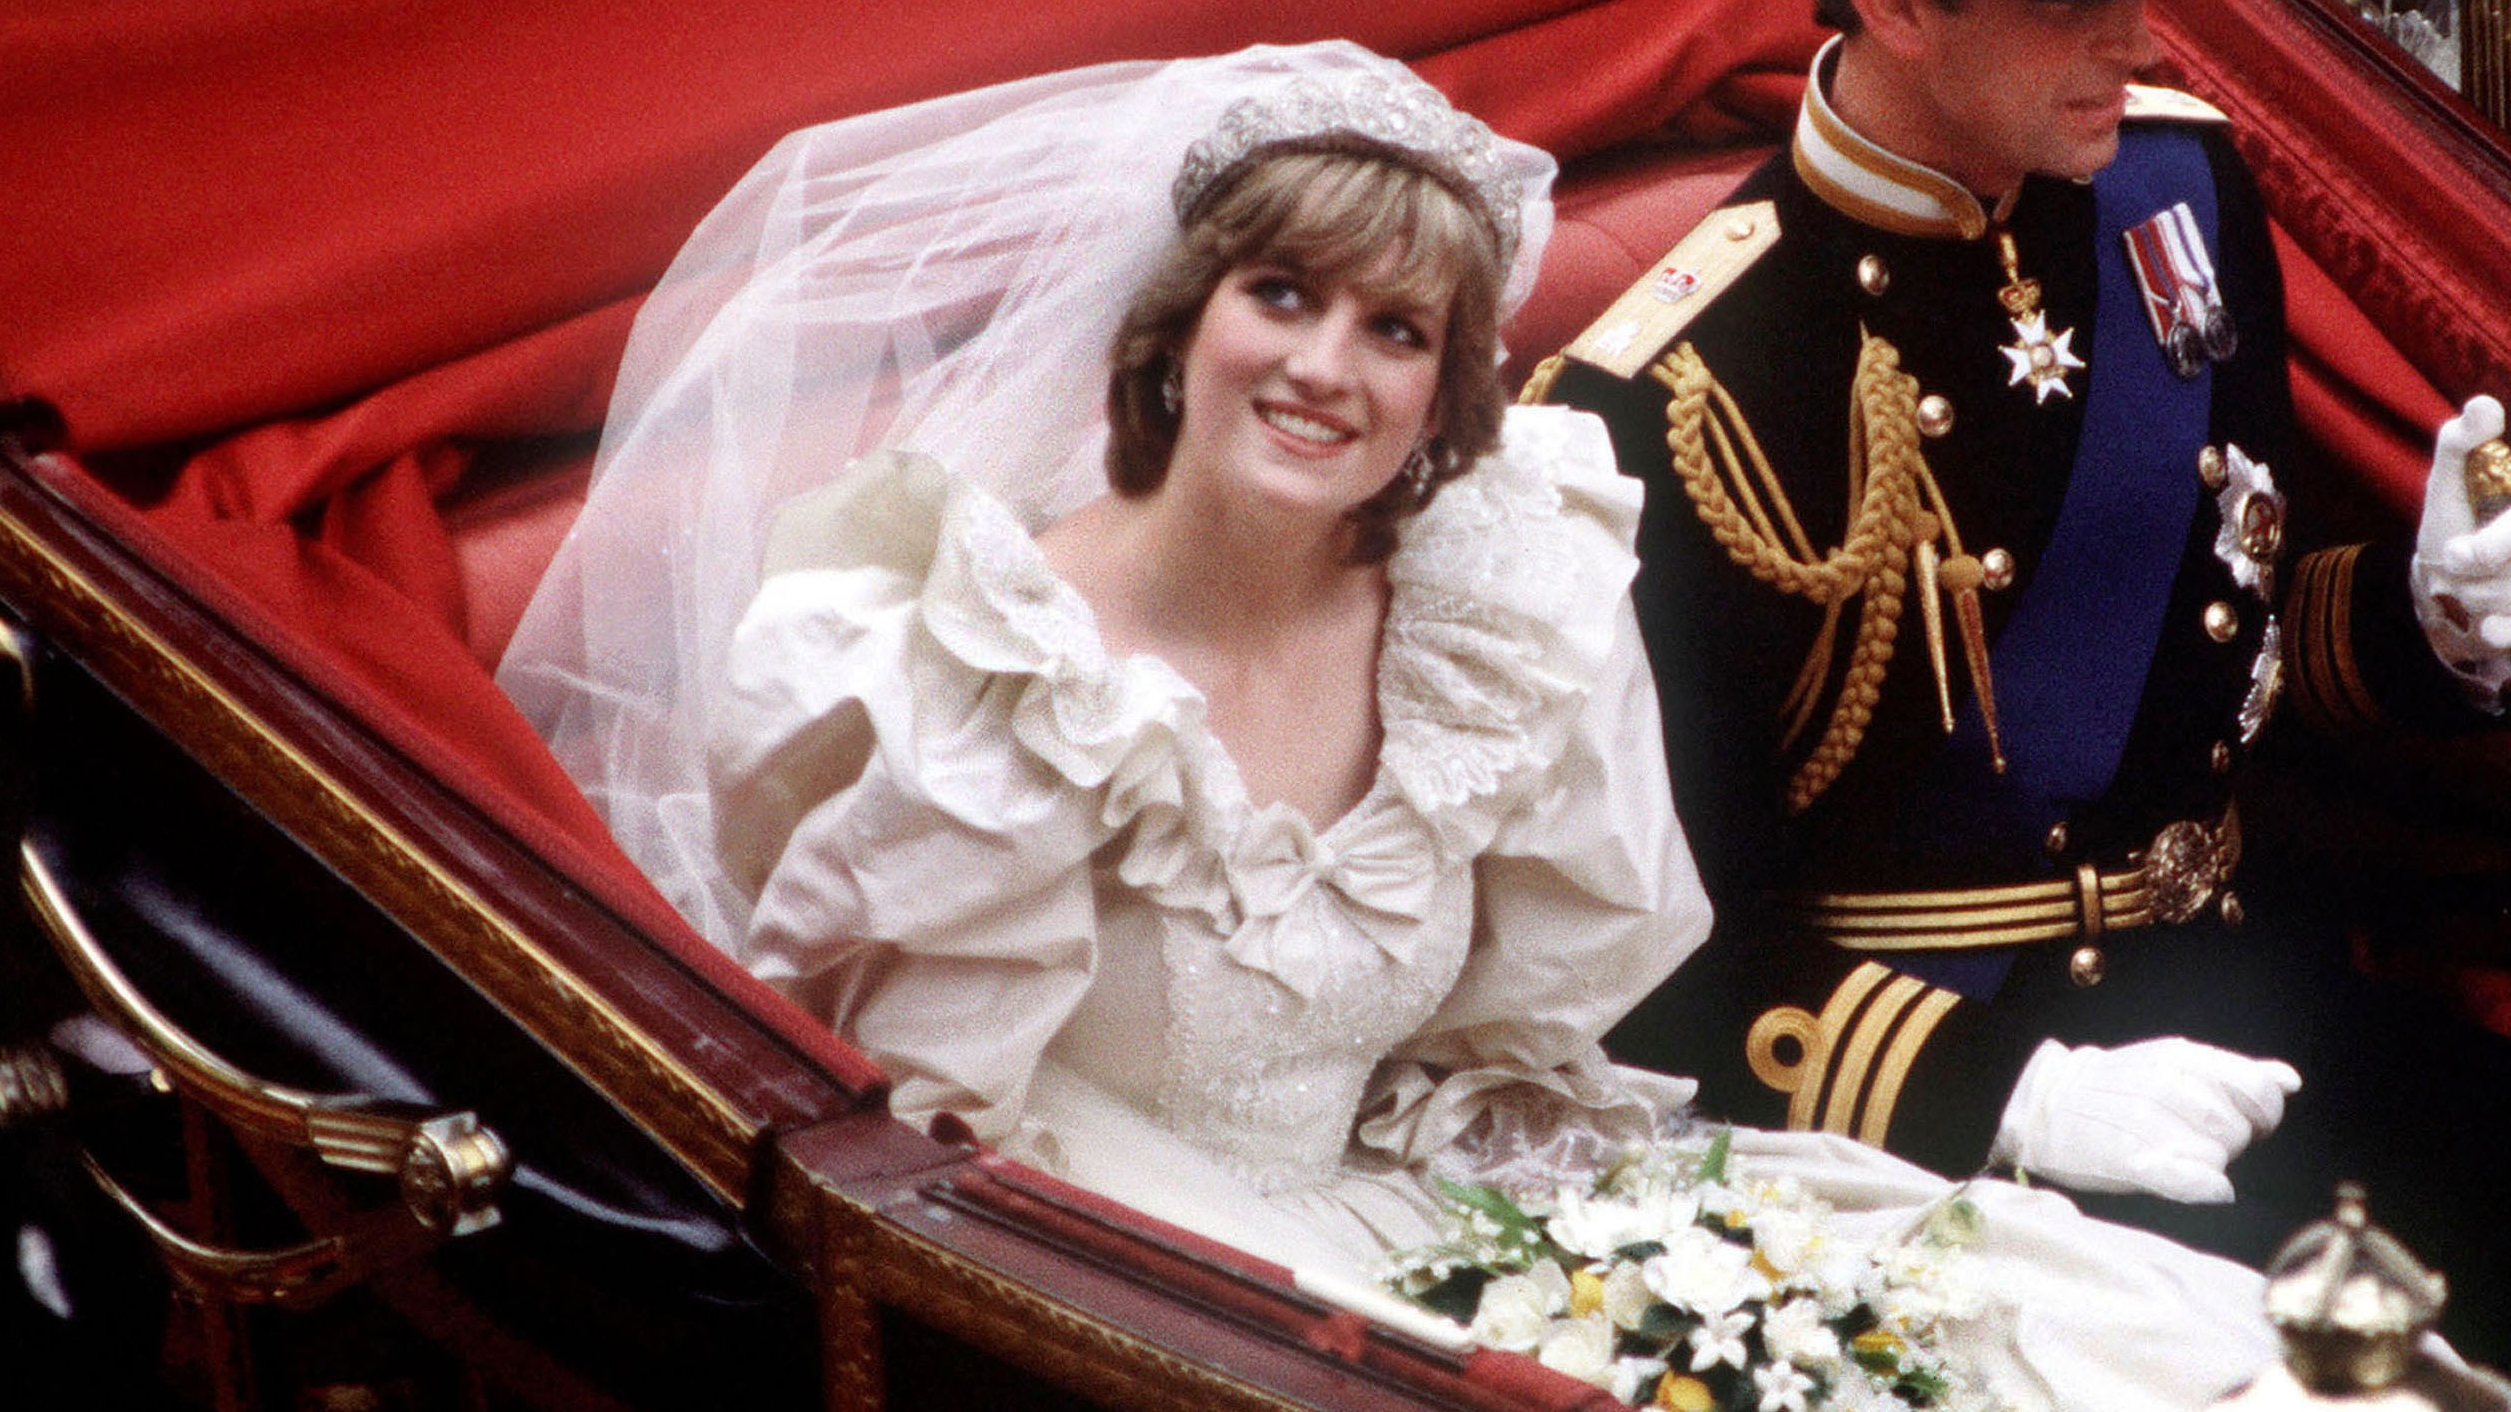 Diana hercegnő az esküvőjén